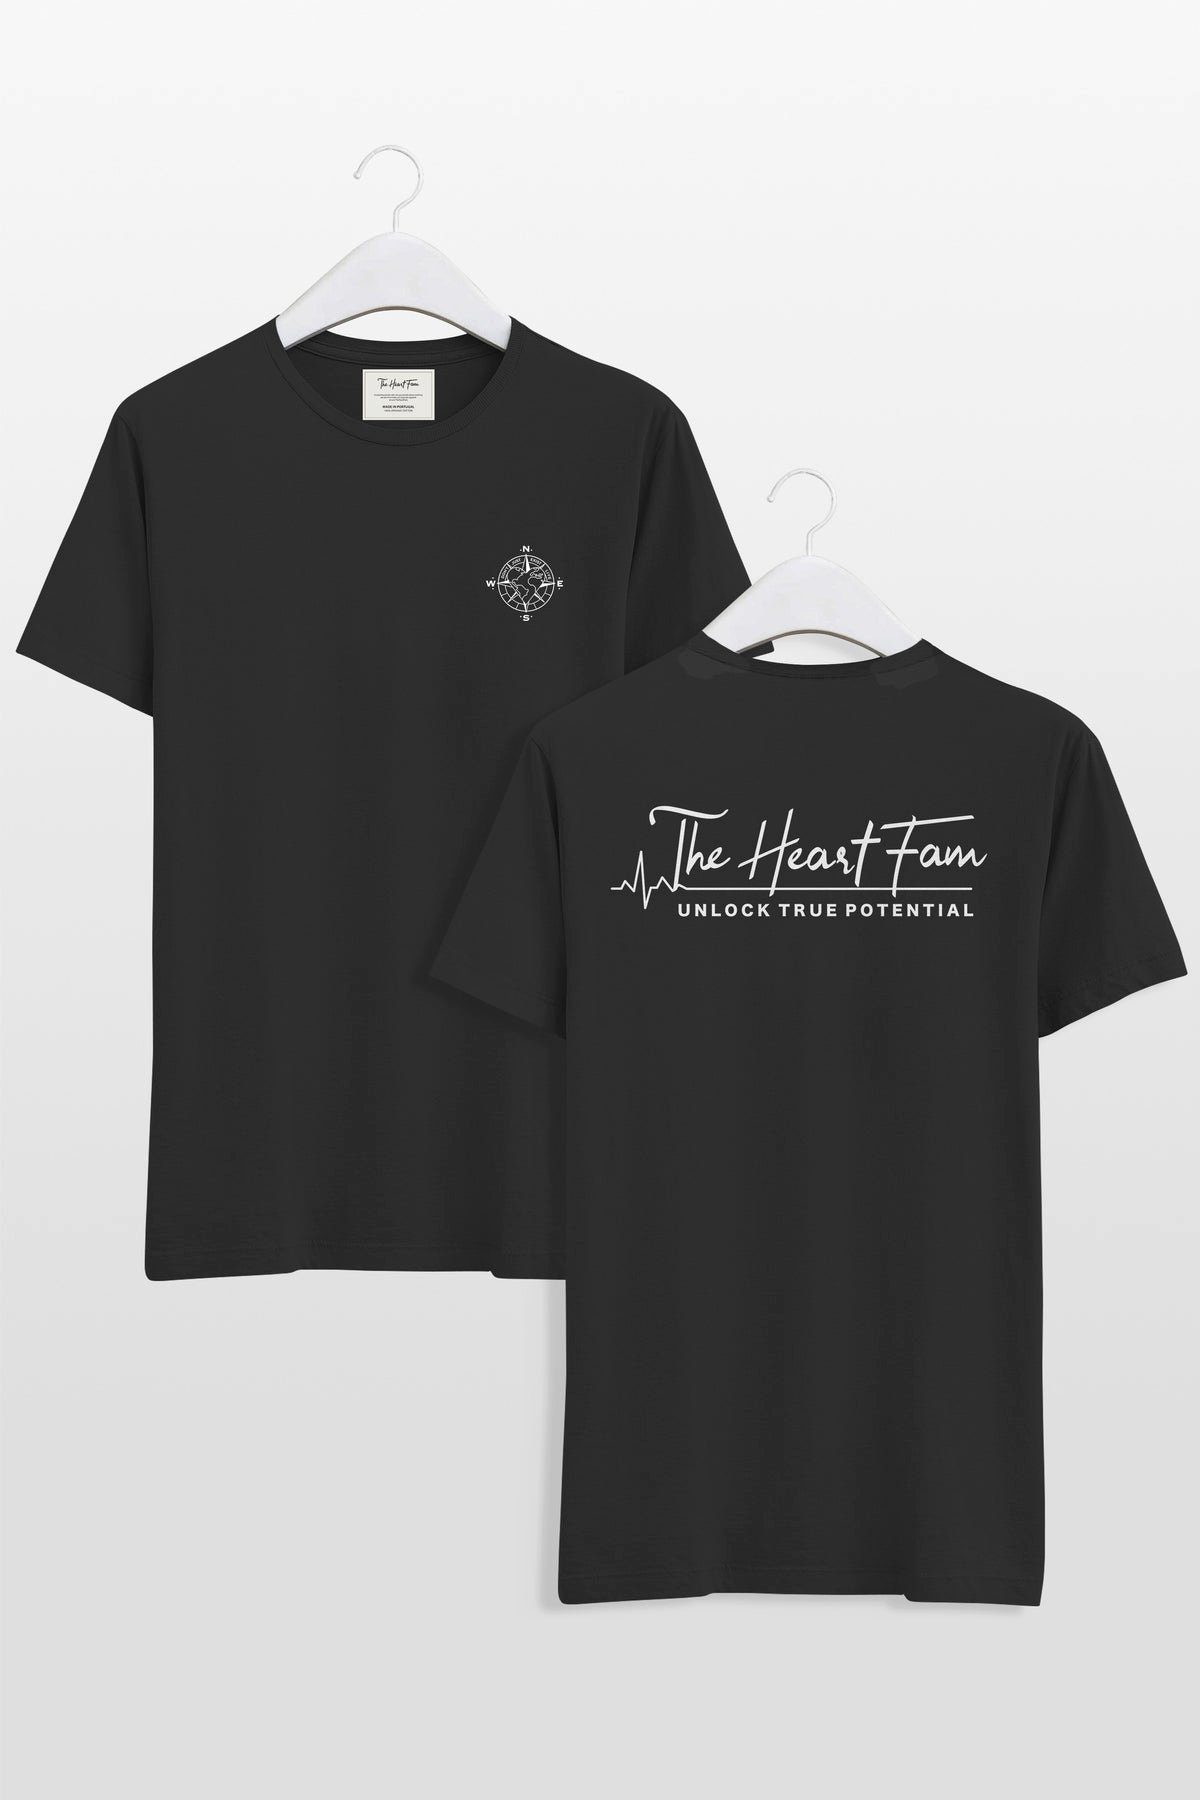 TheHeartFam T-Shirt Nachhaltiges Bio-Baumwolle Tshirt Schwarz Classic Herren Frauen Hergestellt in Portugal / Familienunternehmen